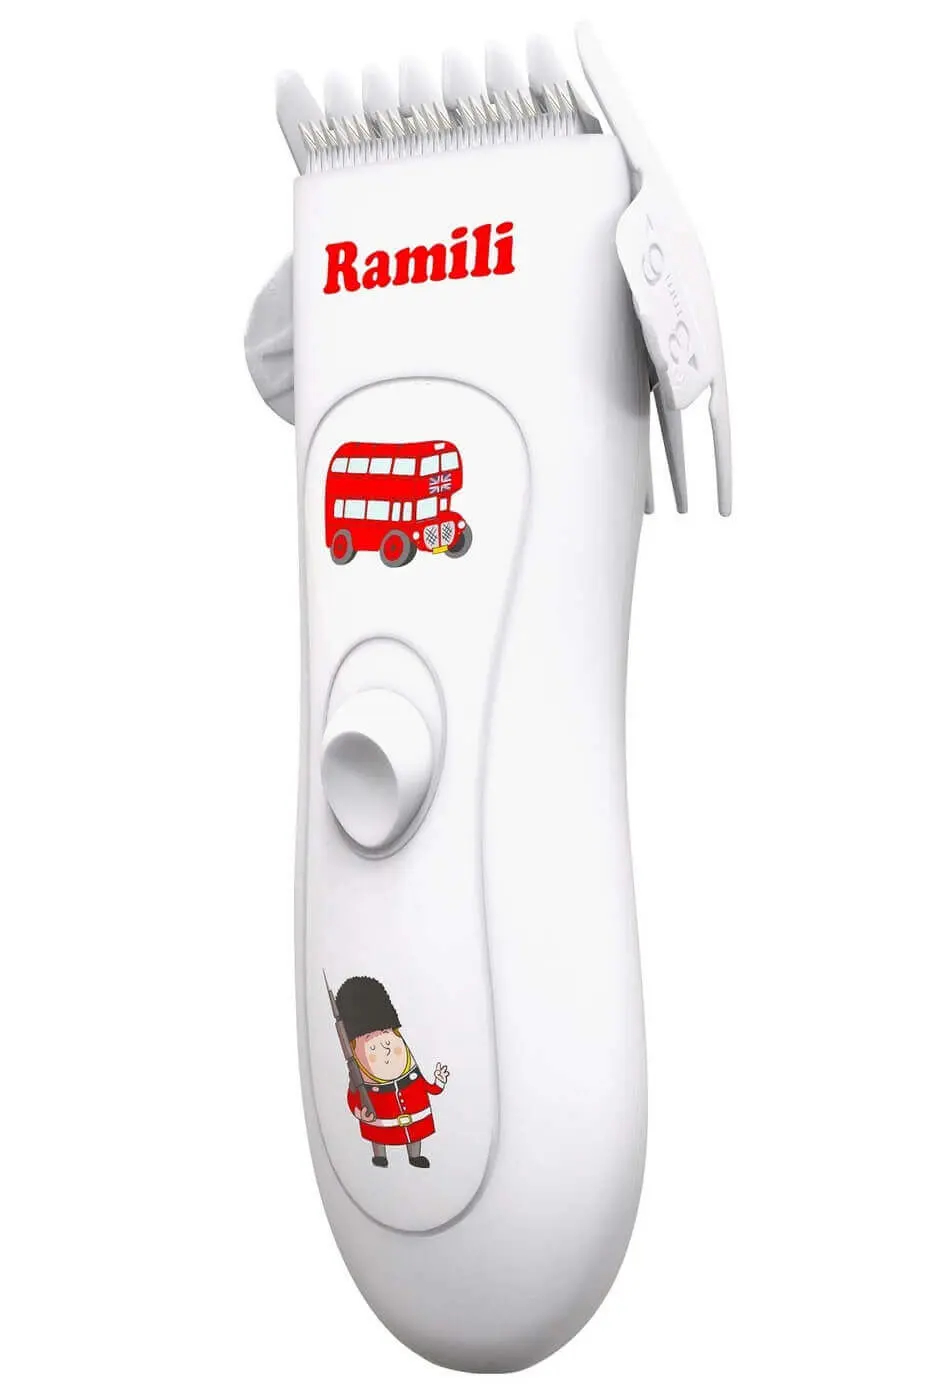 Машинка для стрижки детских волос Ramili Baby BHC350 